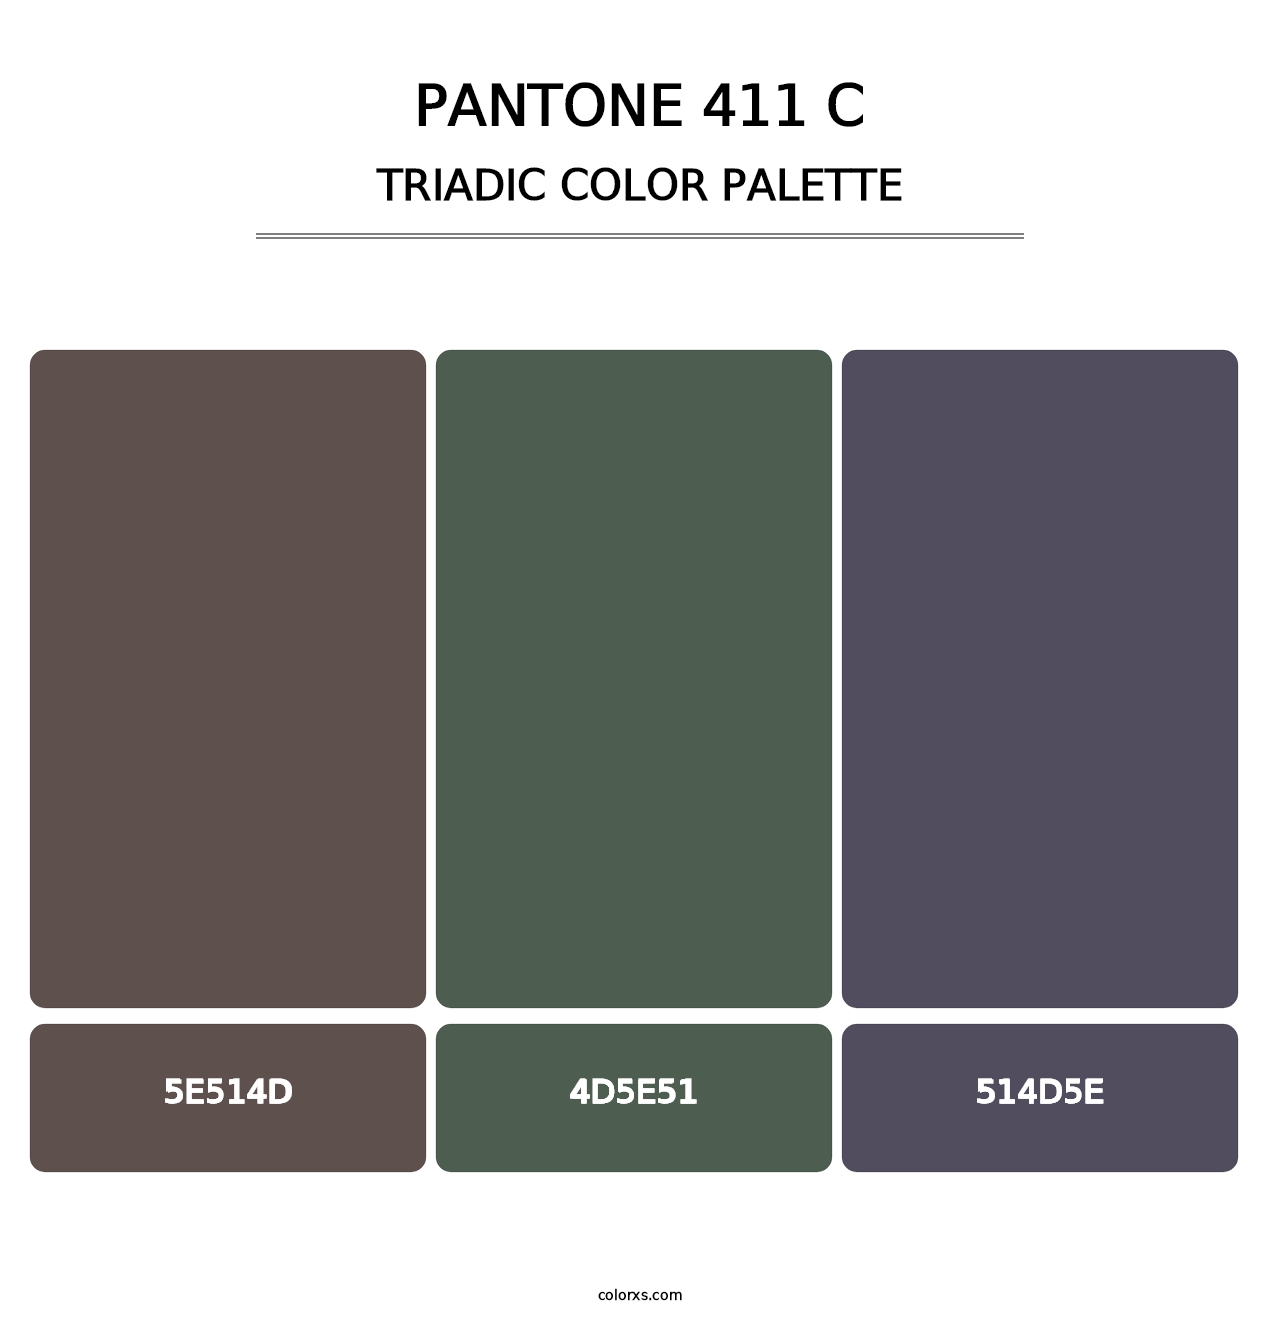 PANTONE 411 C - Triadic Color Palette